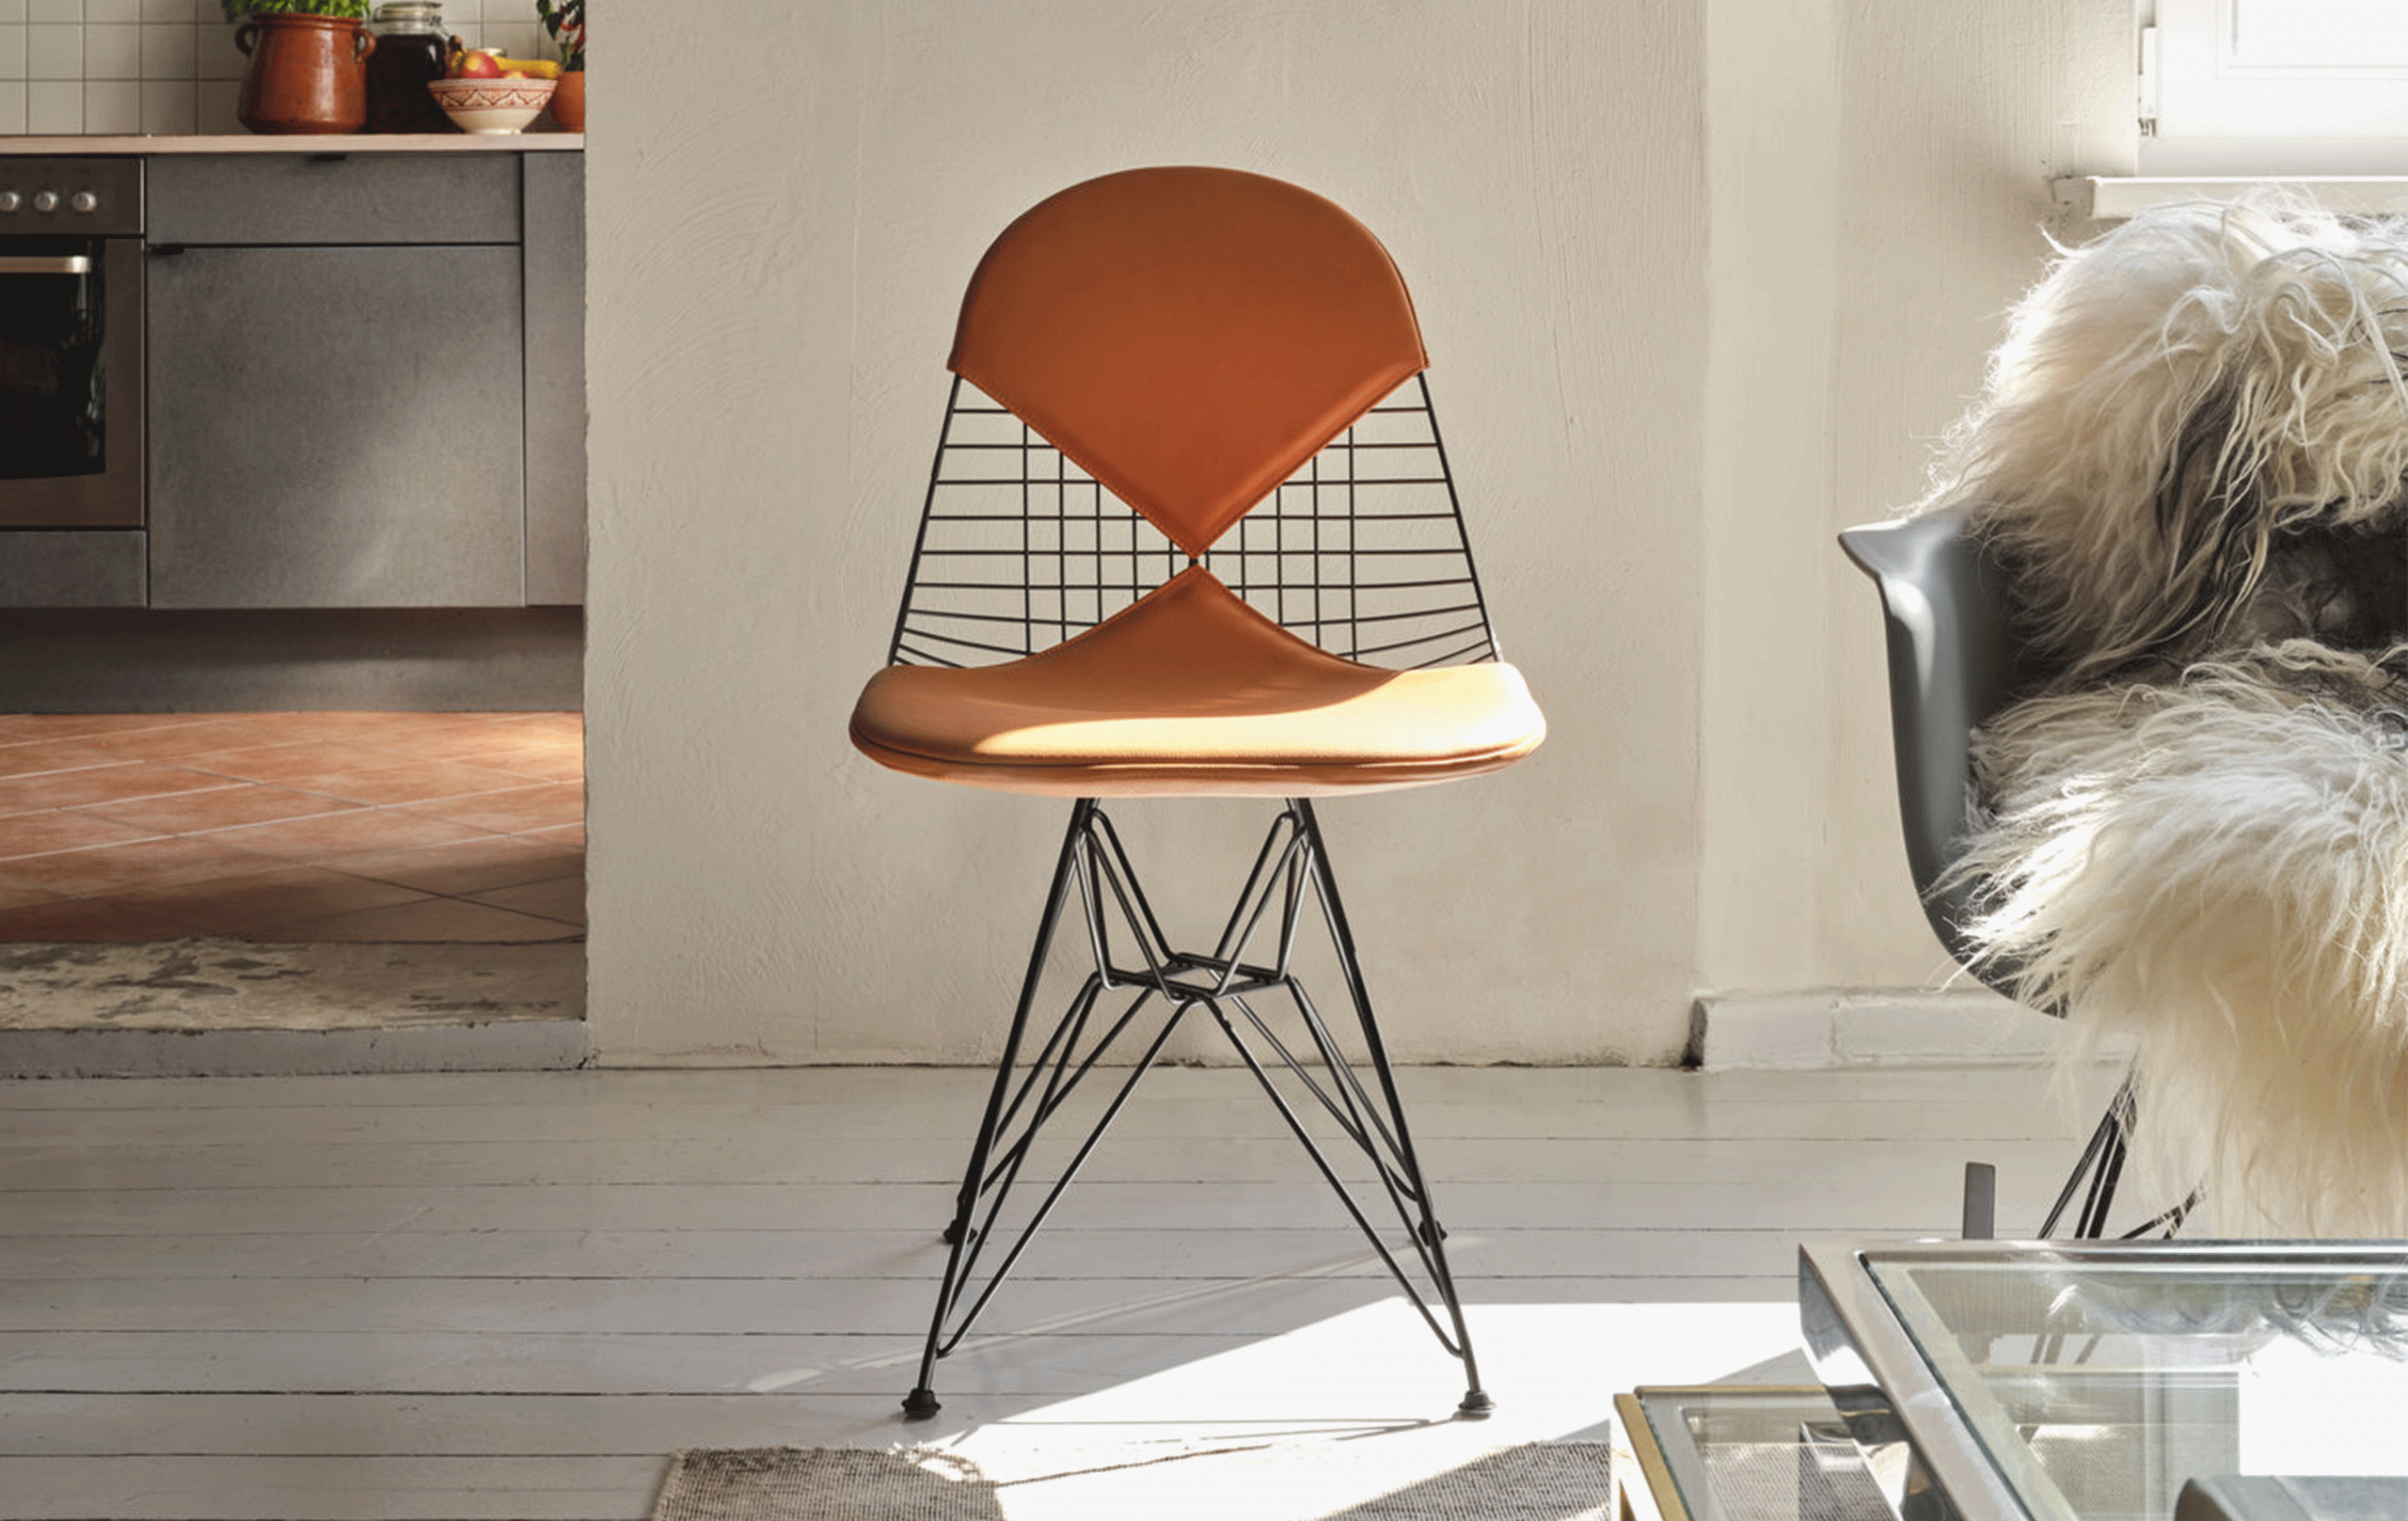 La Wire Chair chez Chris Glass, qui s’est créé un intérieur éclectique.